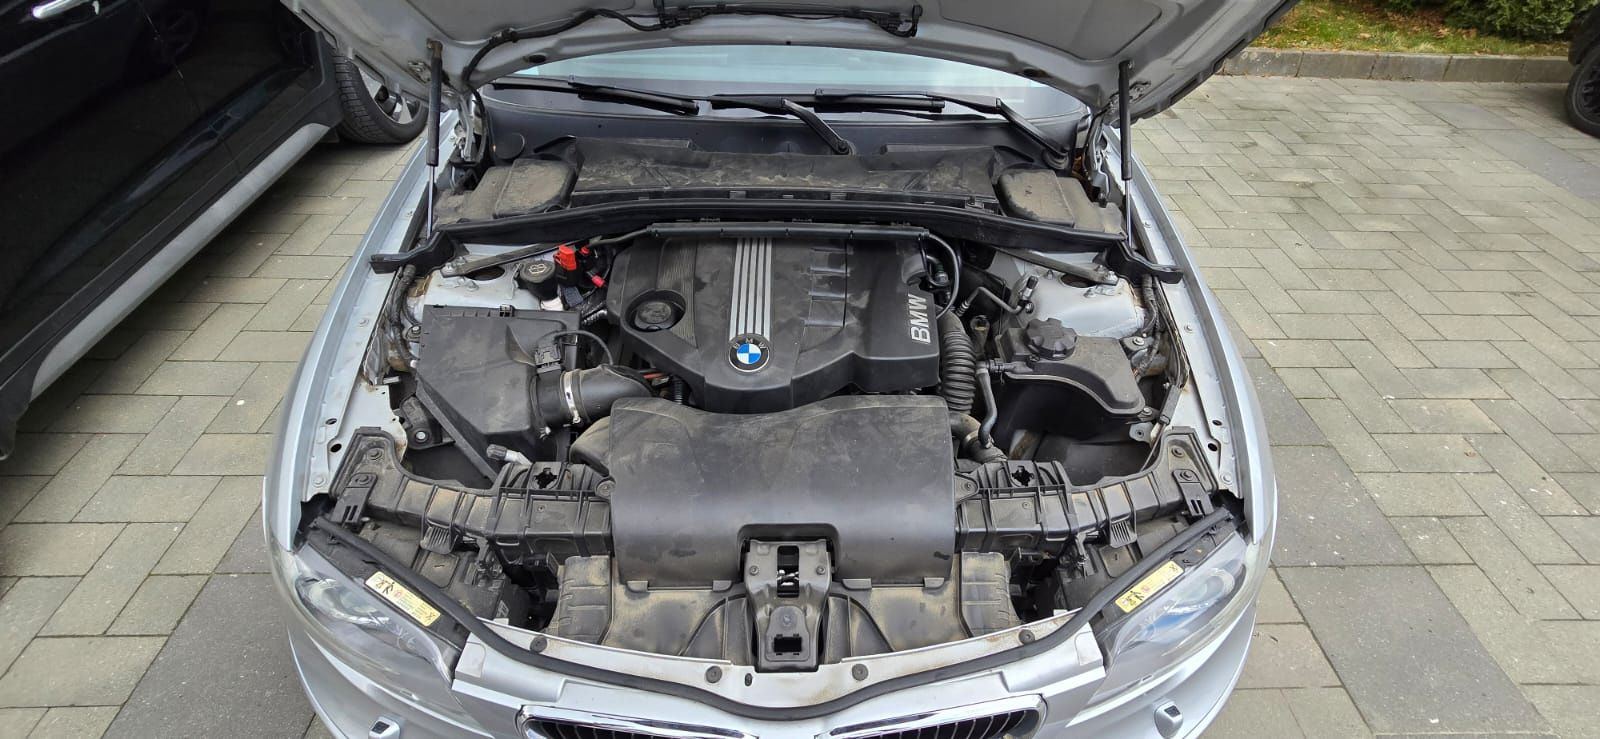 Vand BMW Seria 1, 75000 km, transmisie automata